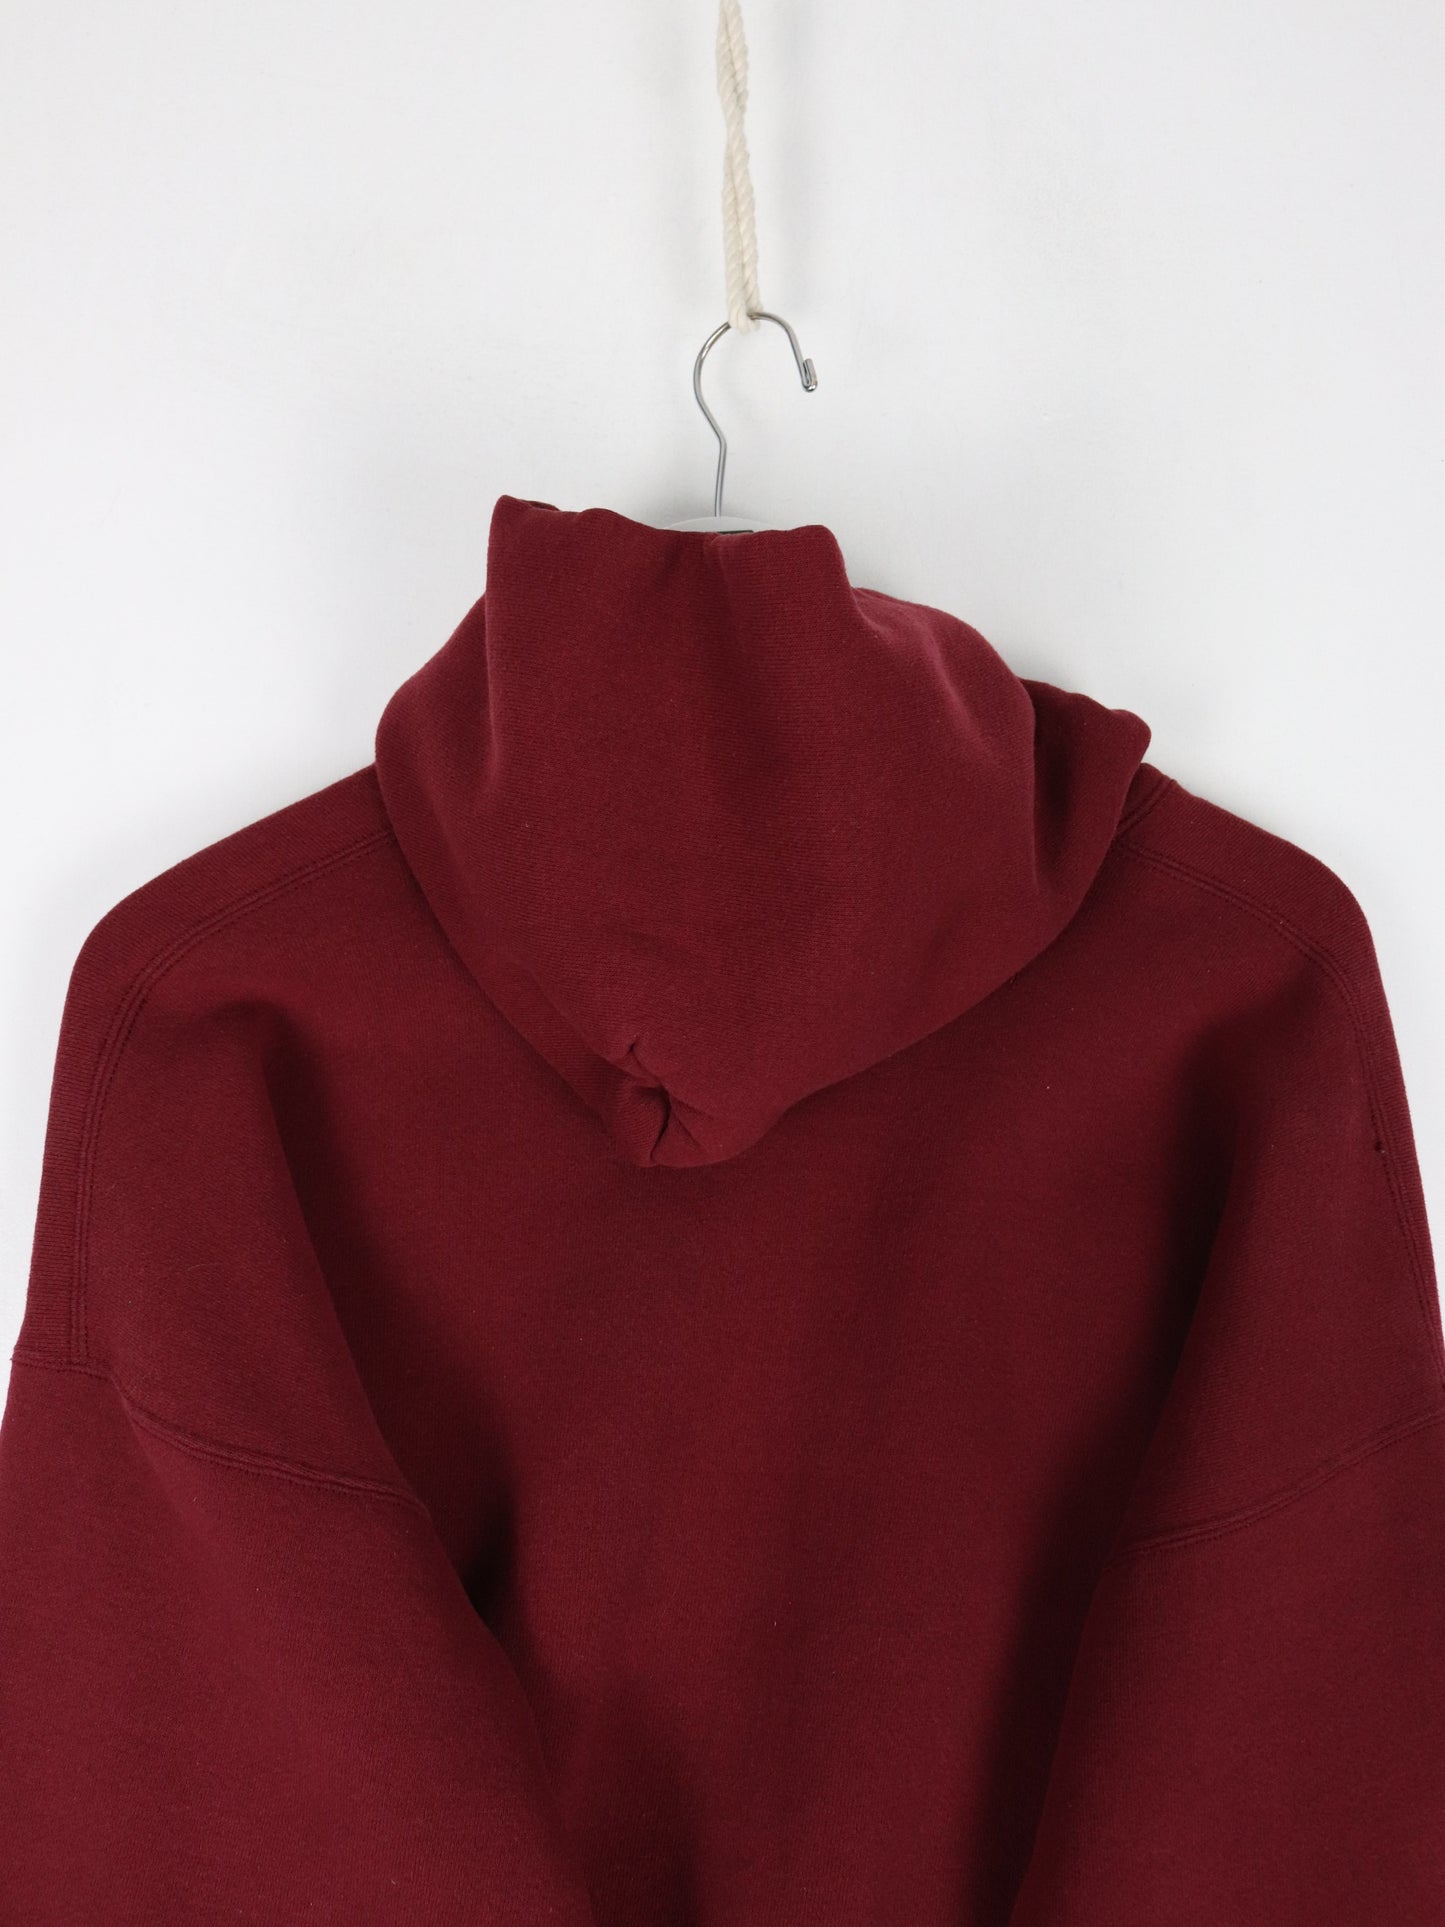 Vintage Bloomsburg College Sweatshirt Mens XL Red Hoodie 90s